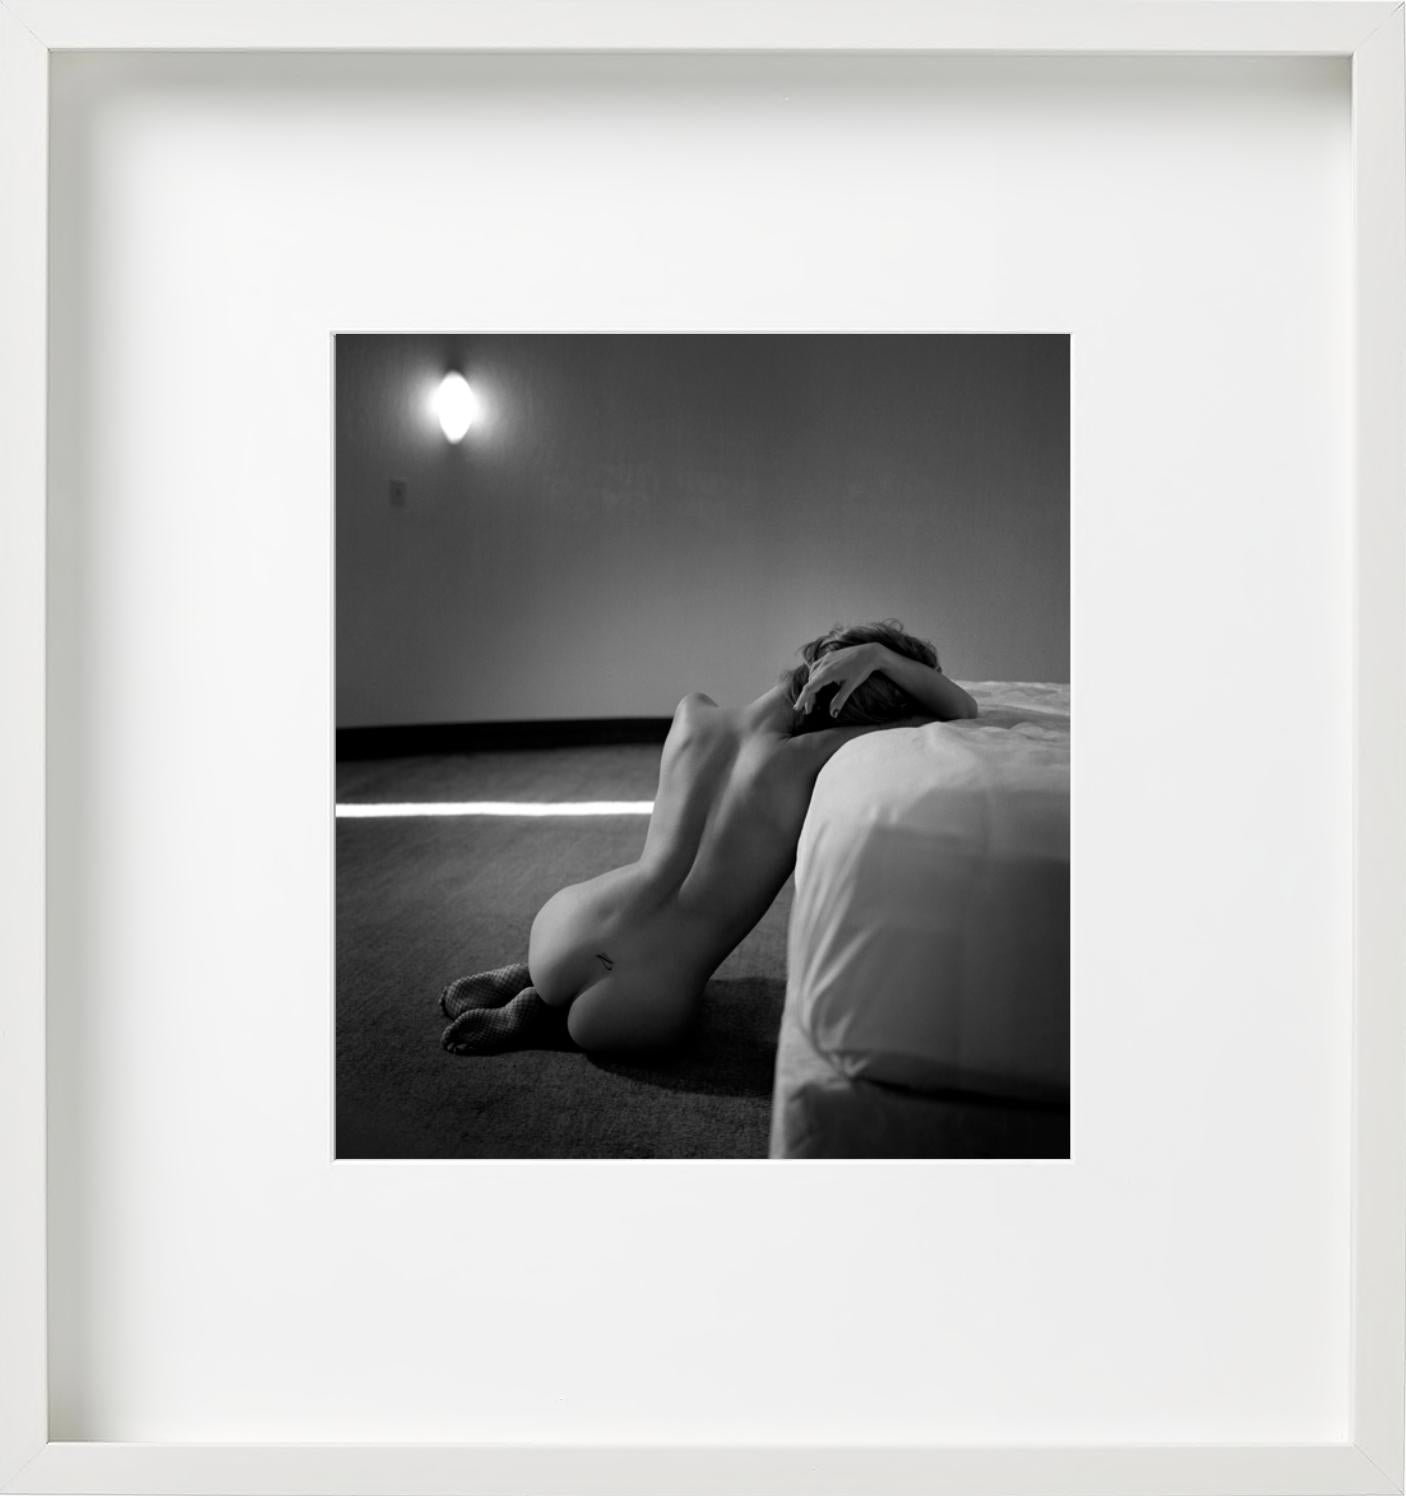 Wage es, die Dinge auf deine Art zu sehen - Nacktmodell lehnt sich gegen das Bett und entblößt ihren Rücken (Zeitgenössisch), Photograph, von Guido Argentini